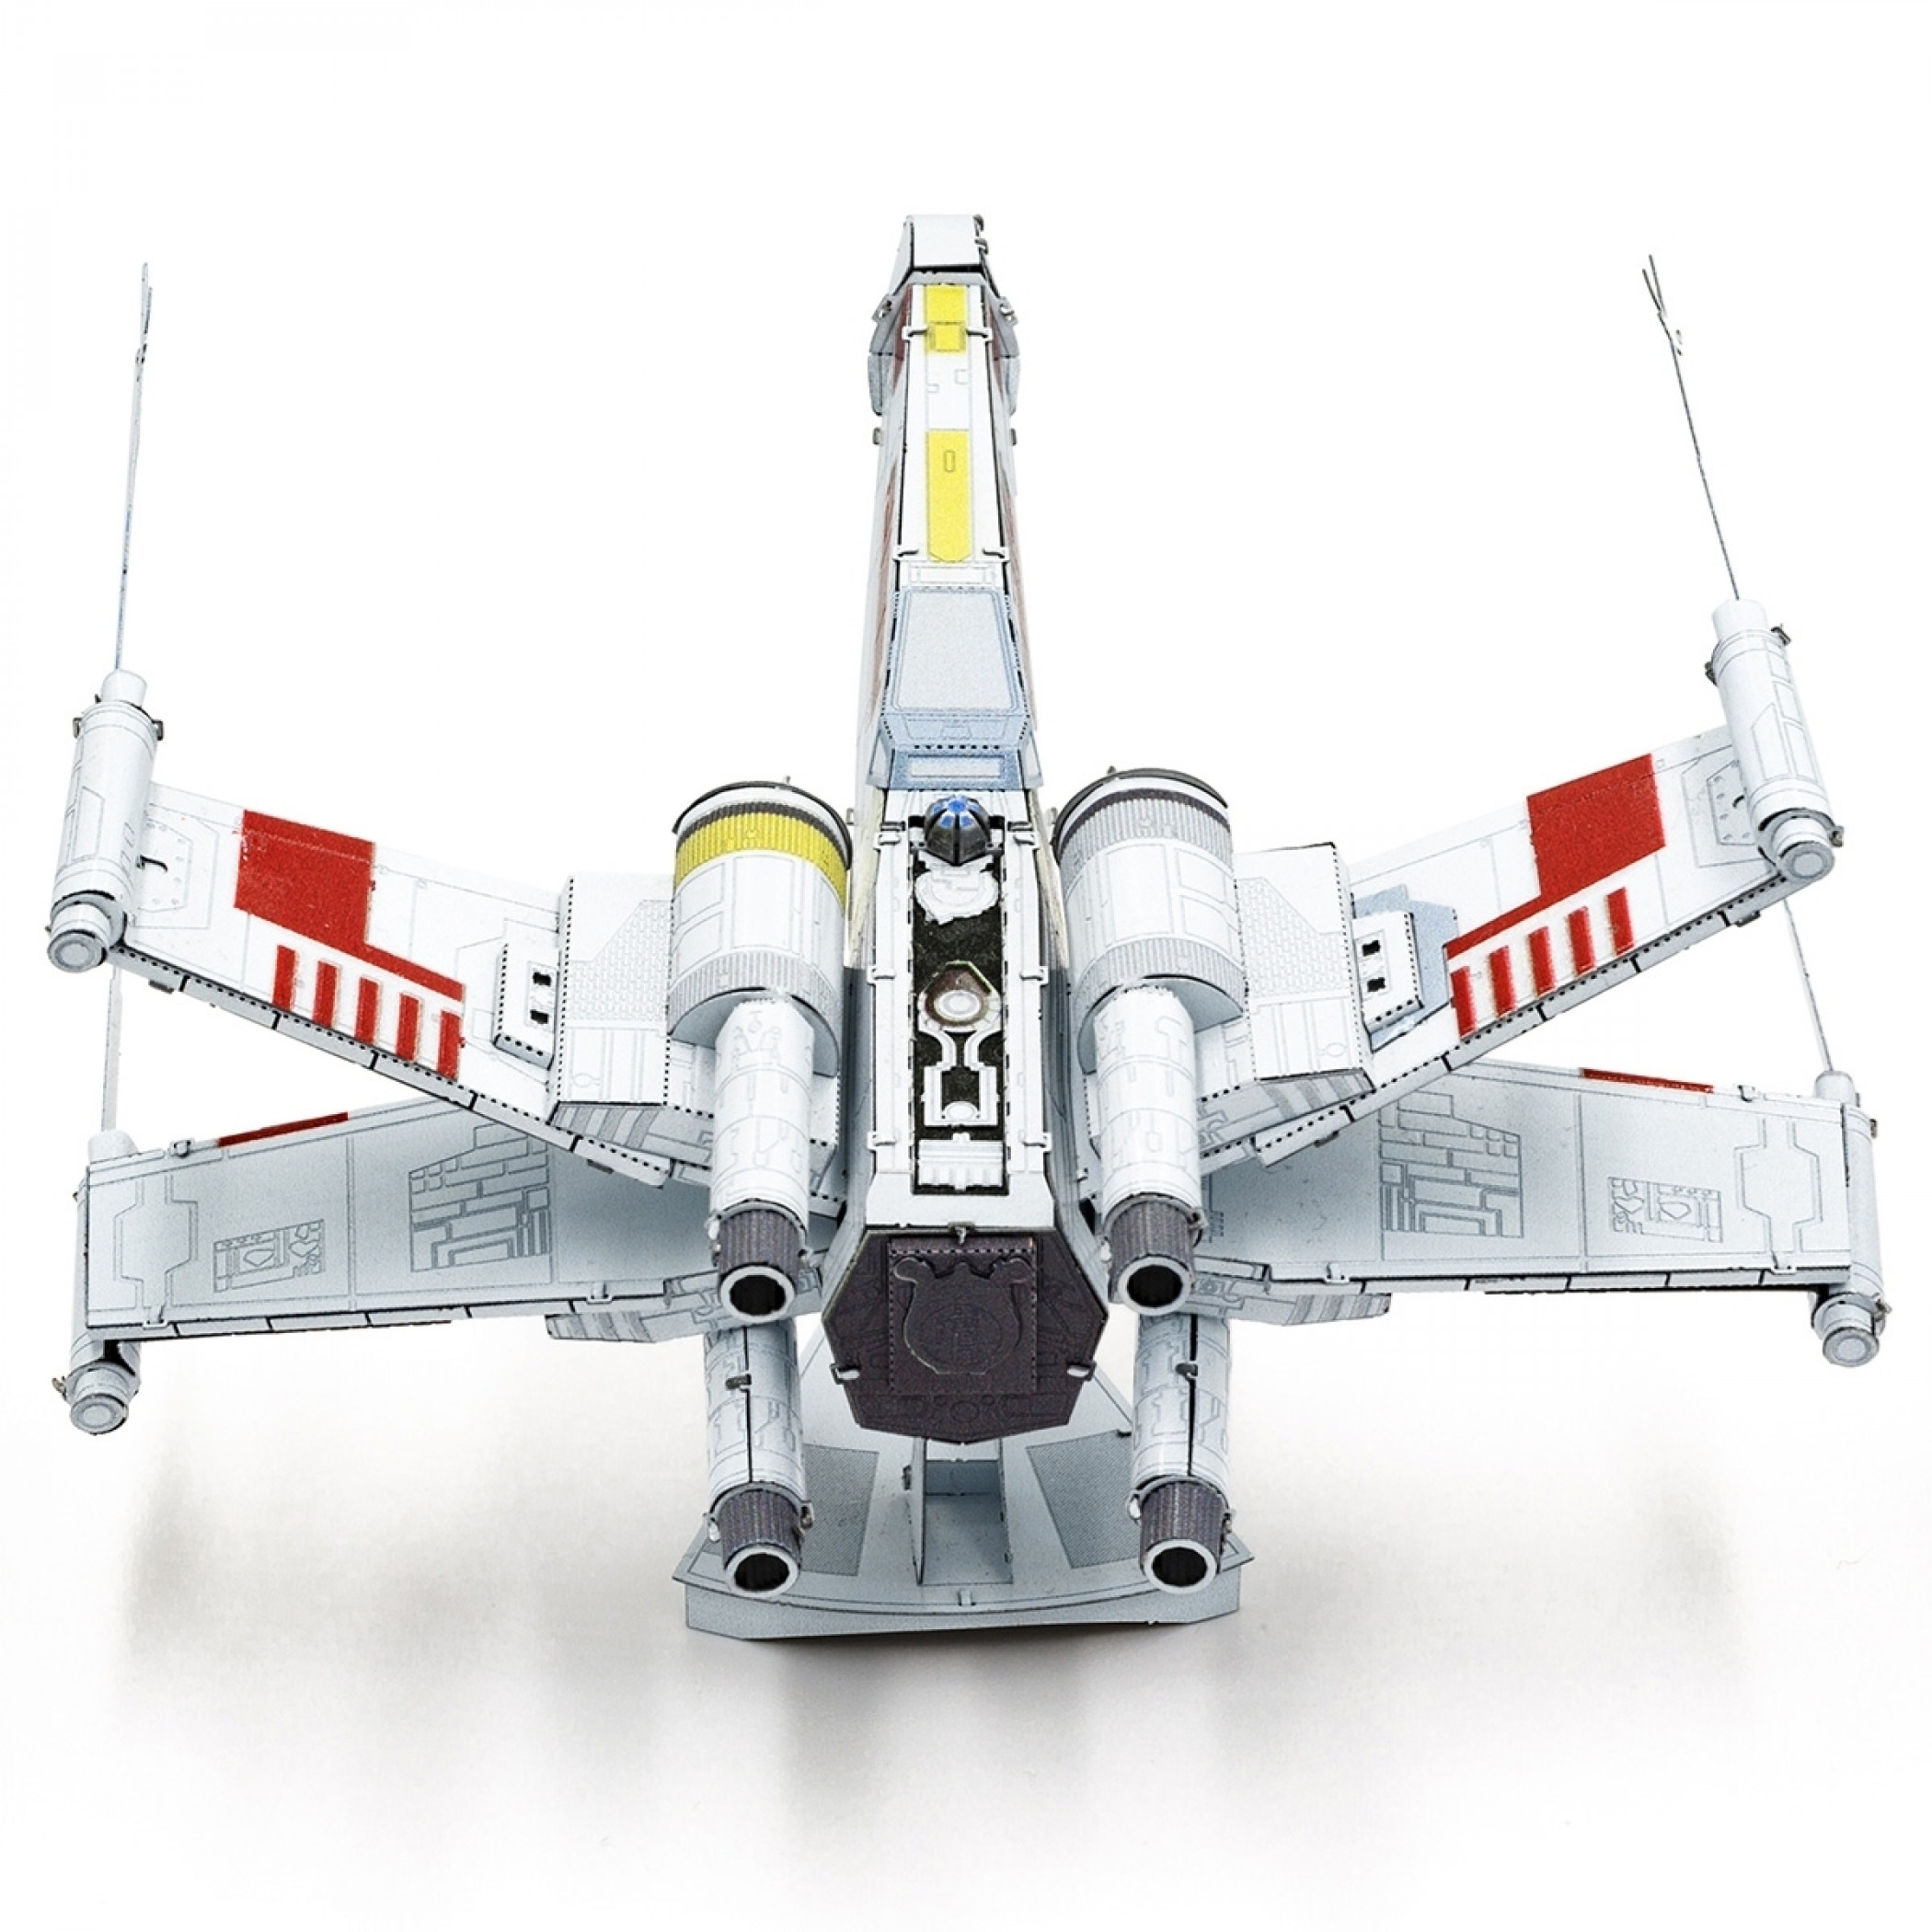 Star Wars X-Wing Starfighter Premium Metal Earth Model Kit